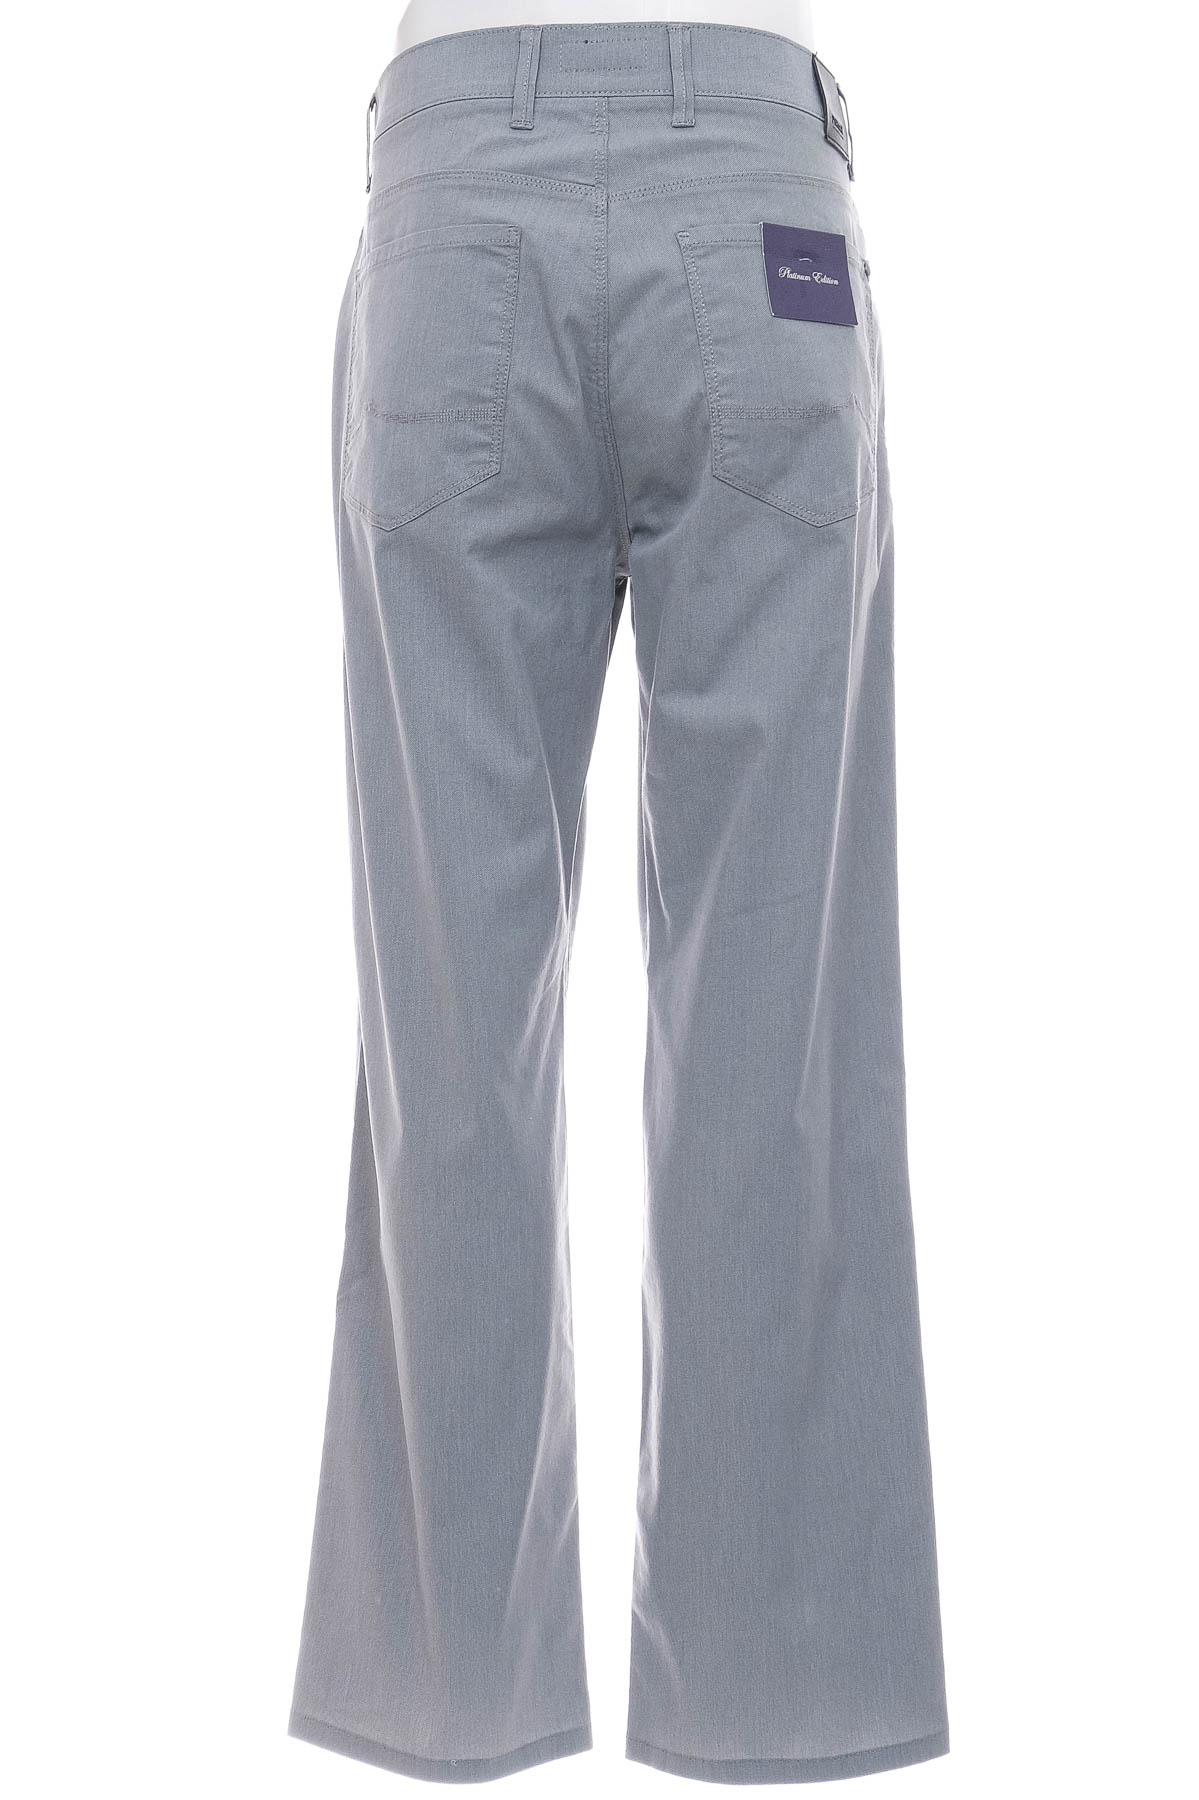 Men's trousers - Pioneer - 1